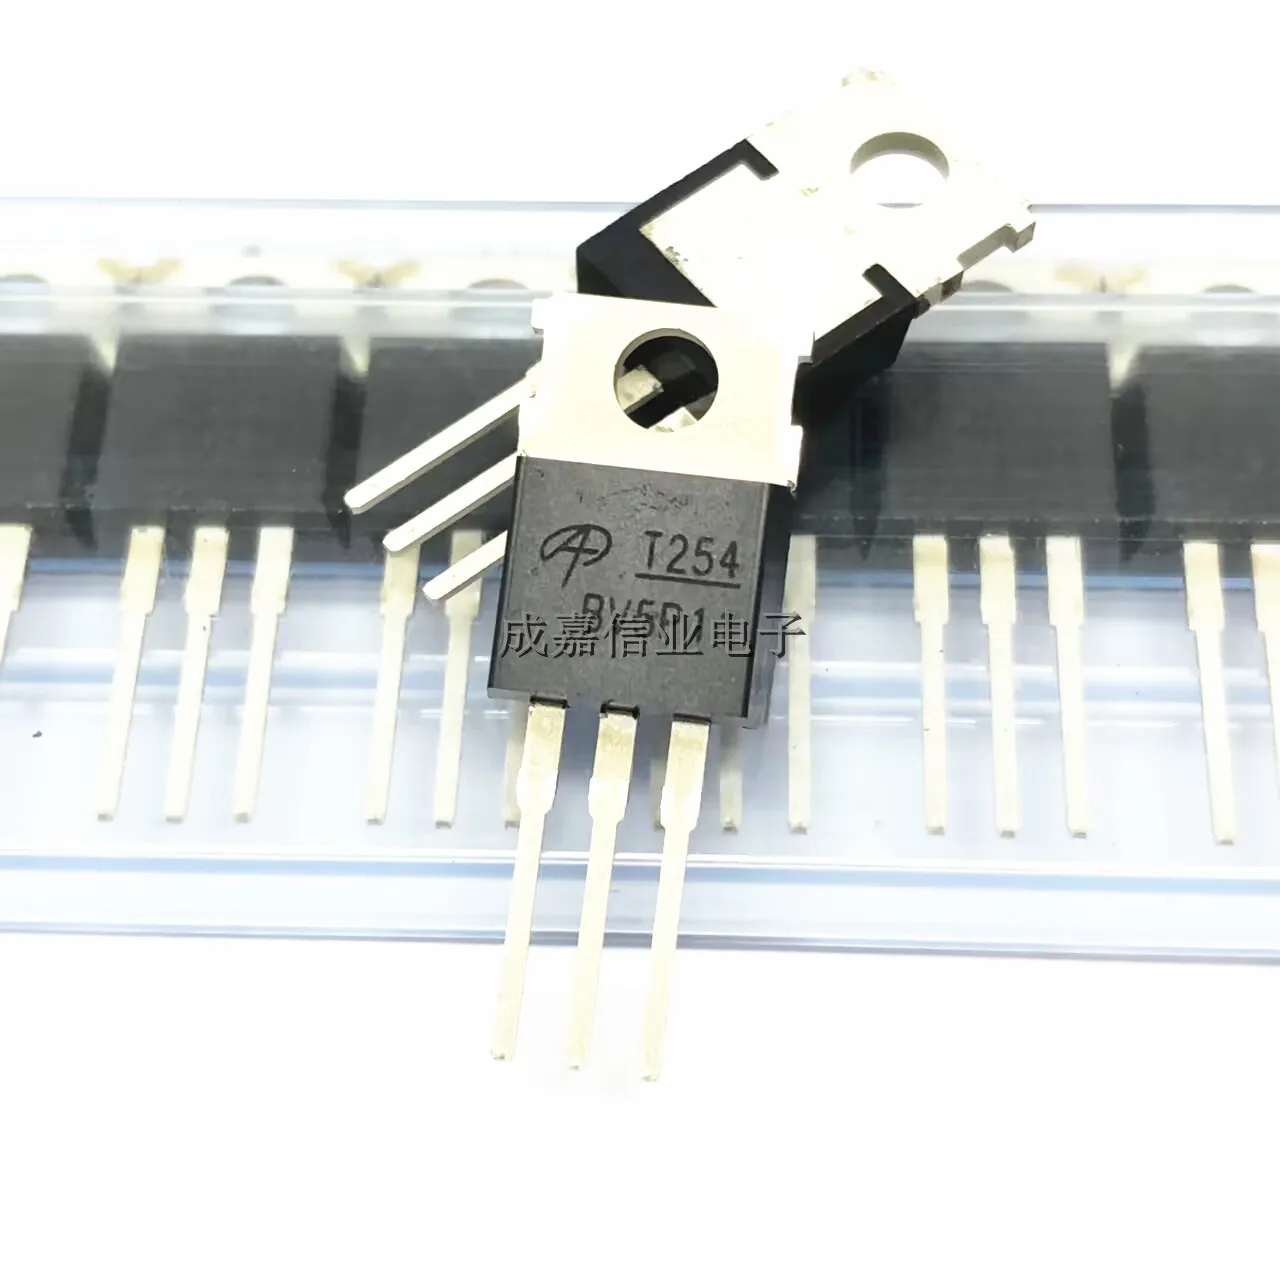 оригинал 10 шт транзистор irgp4066d to 247 irgp4066dpbf to247 irgp4066 стандартный транзистор igbt 600 в а 10 шт./лот транзистор полевого эффекта AOT254L TO-220-3 маркировка; T254 N-канальный транзистор 150 в 175 а рабочая температура; -55 ℃ ~ + ℃